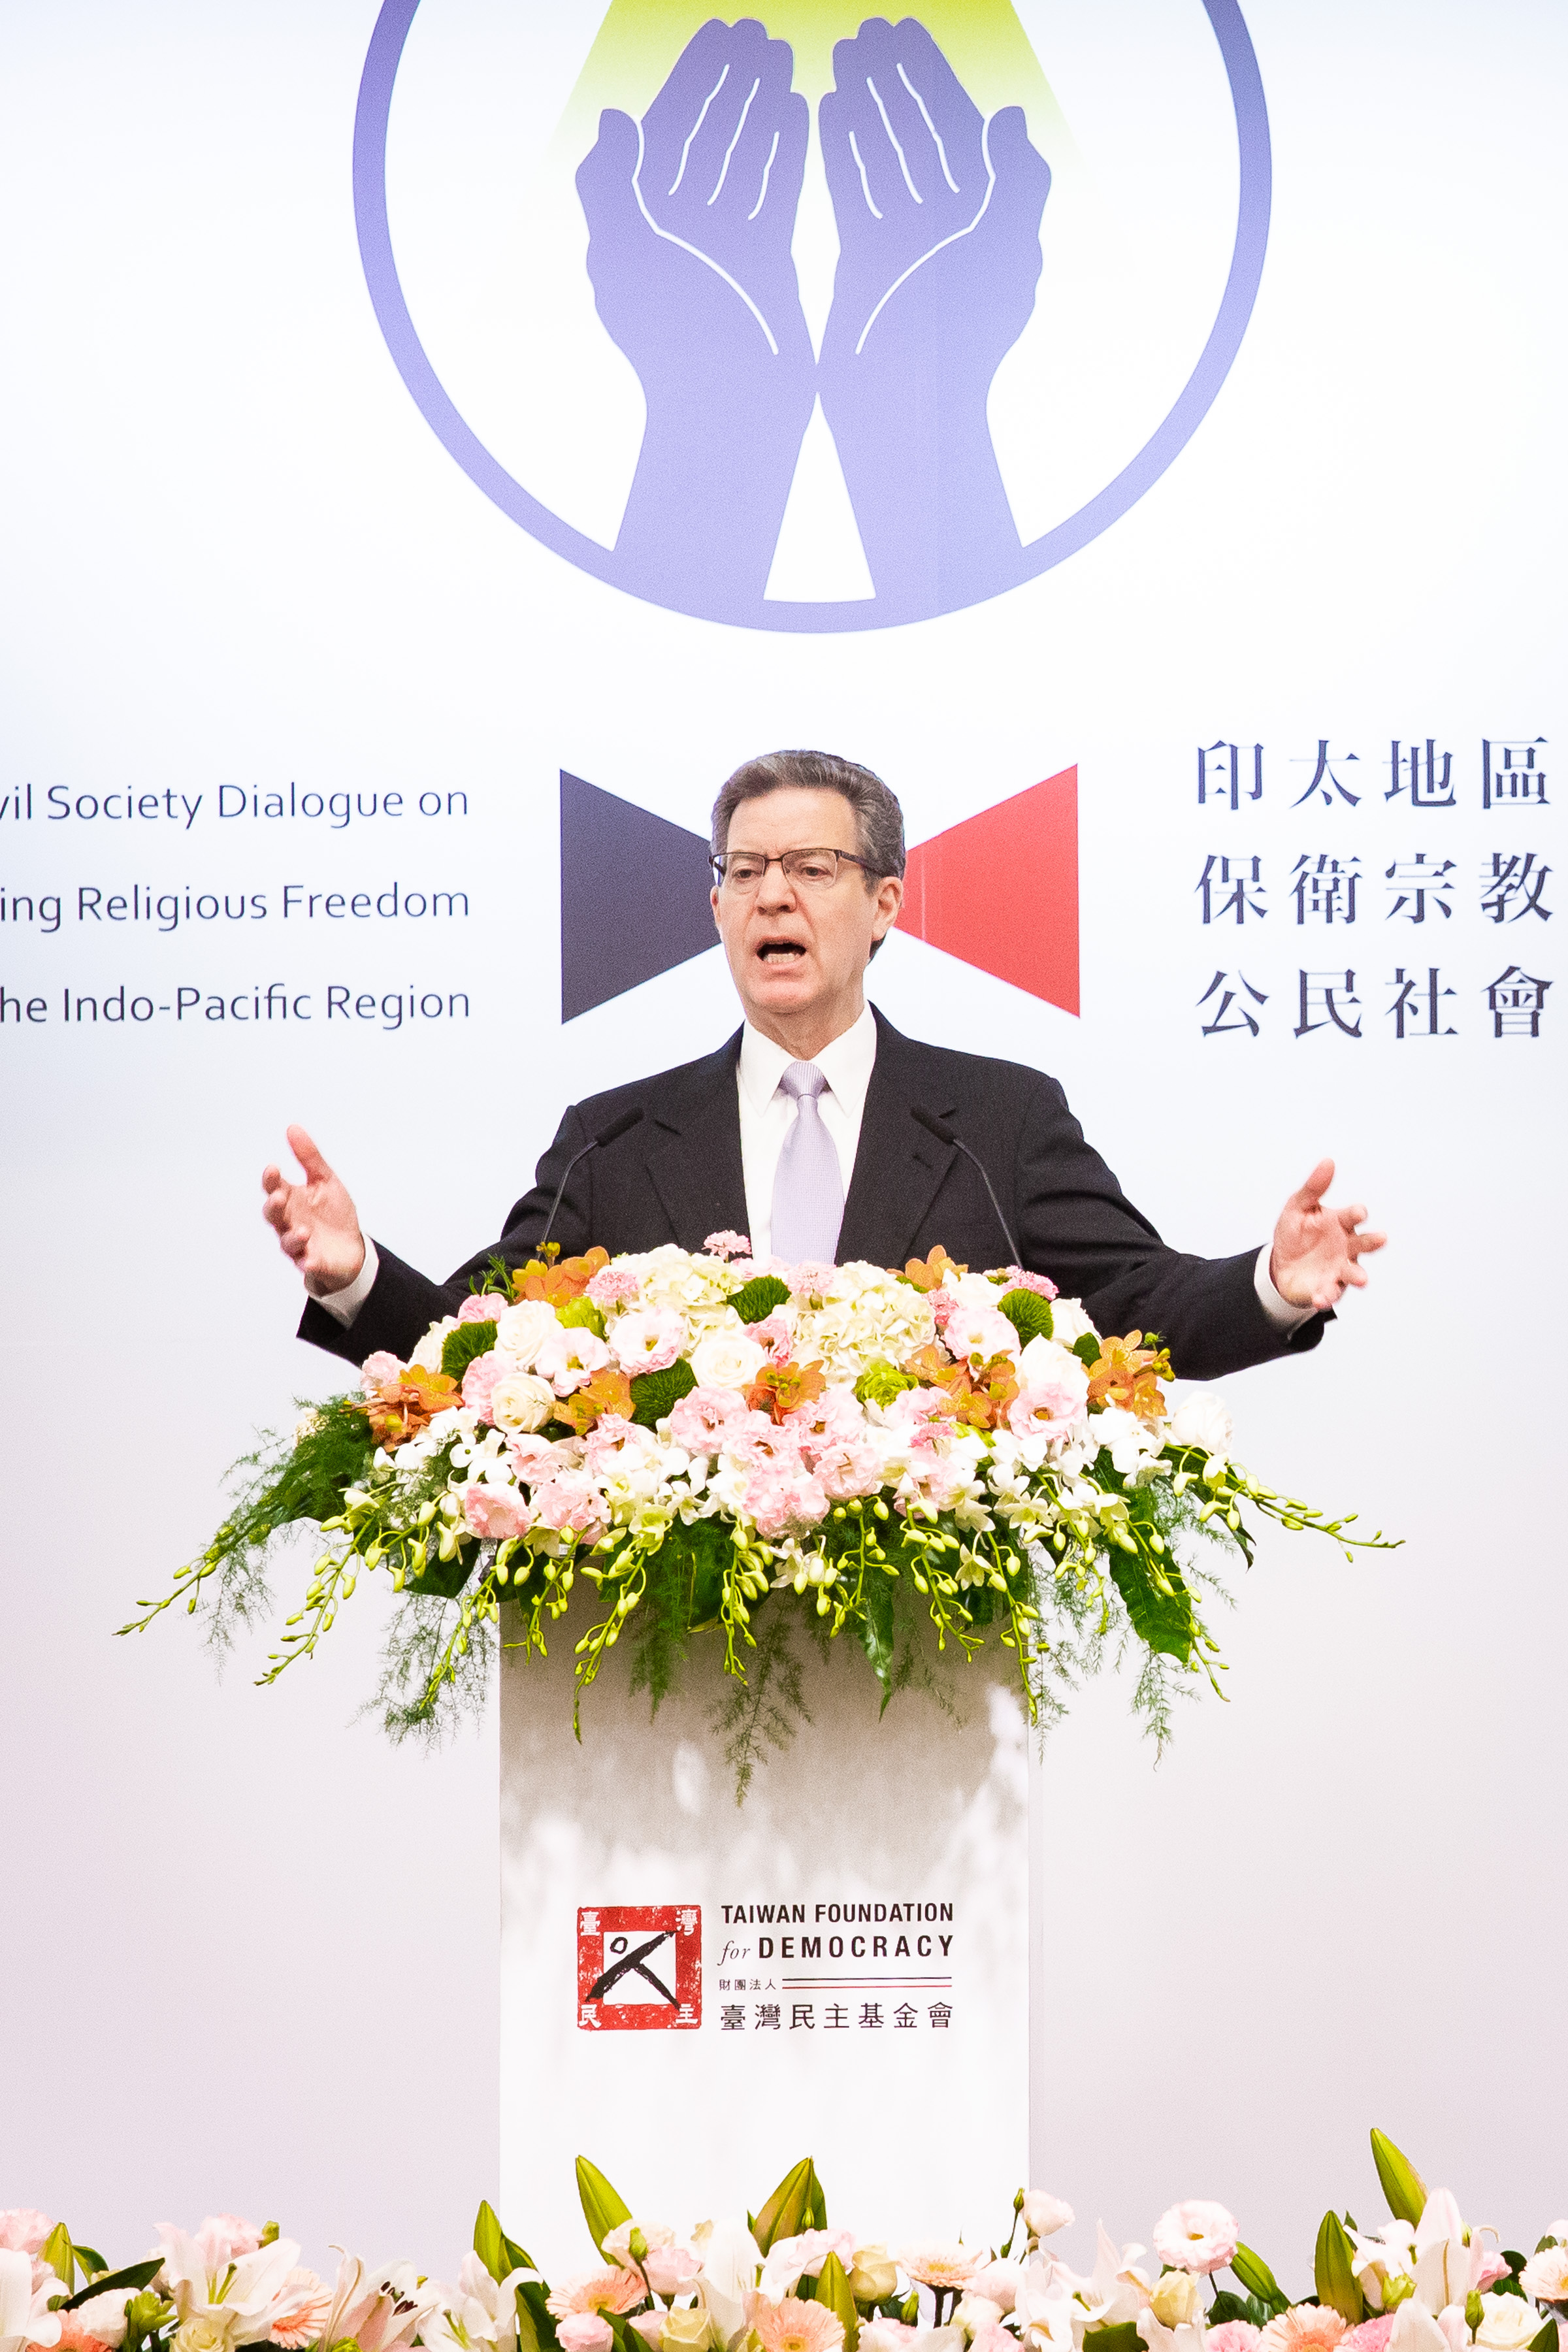 Image for article Taïwan : La persécution du Falun Gong mise en lumière pendant la conférence indo-pacifique